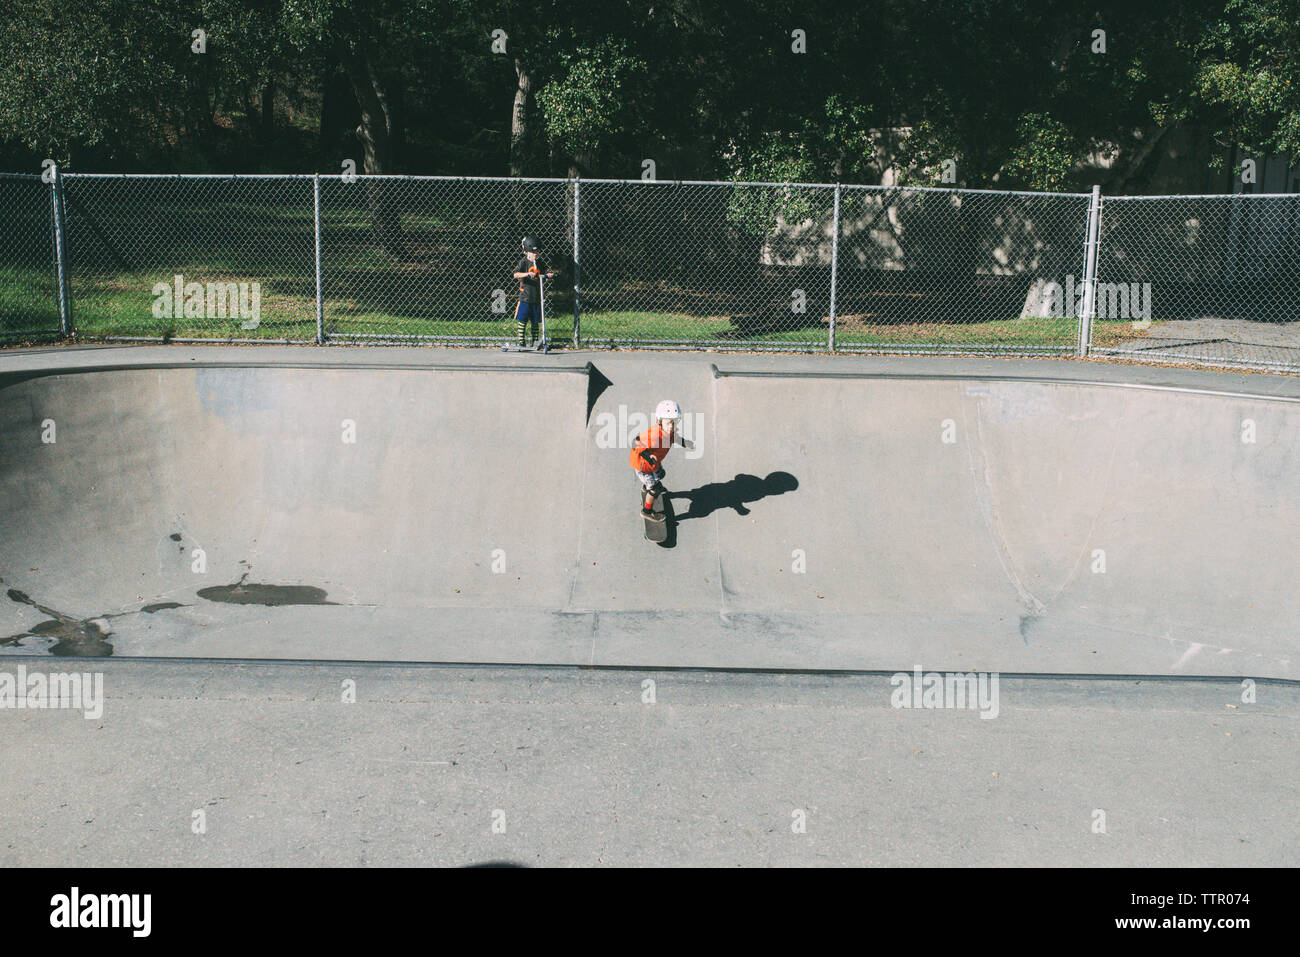 Junge während Bruder skateboarding auf Sport Rampe im Park Stockfoto